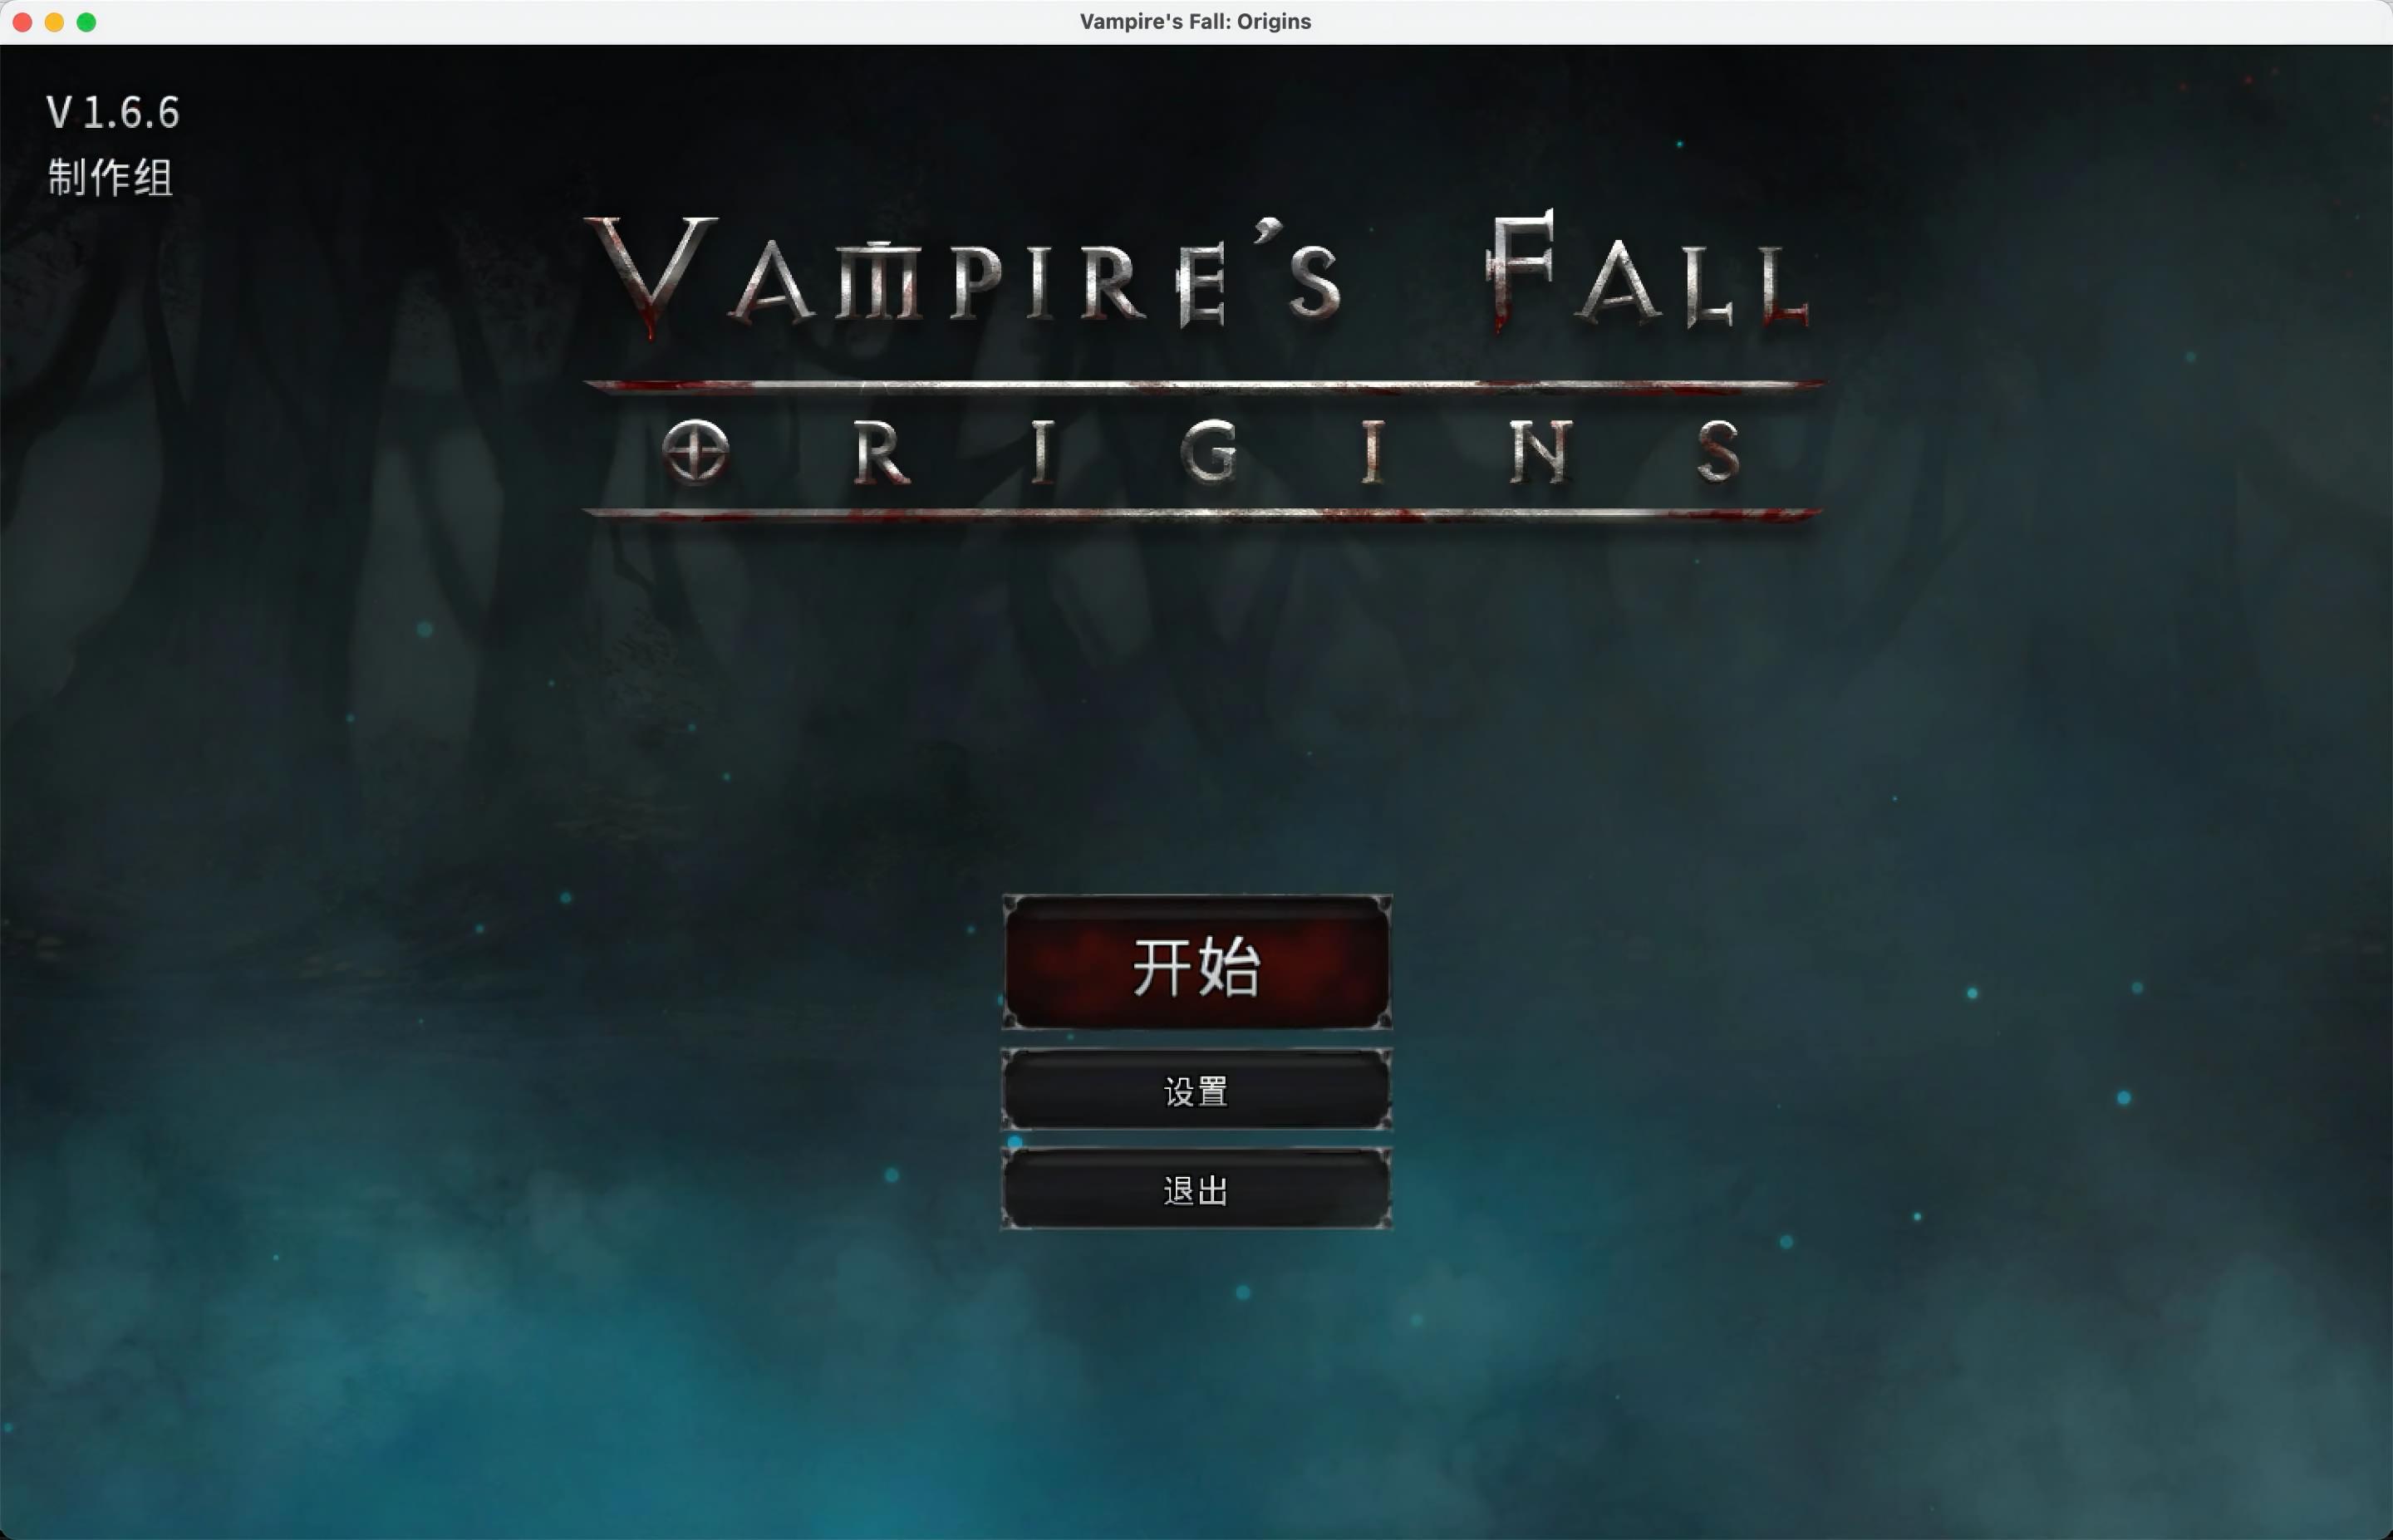 吸血鬼之殇：起源 for Mac v1.6.6 Vampire's Fall: Origins 中文移植版 苹果电脑